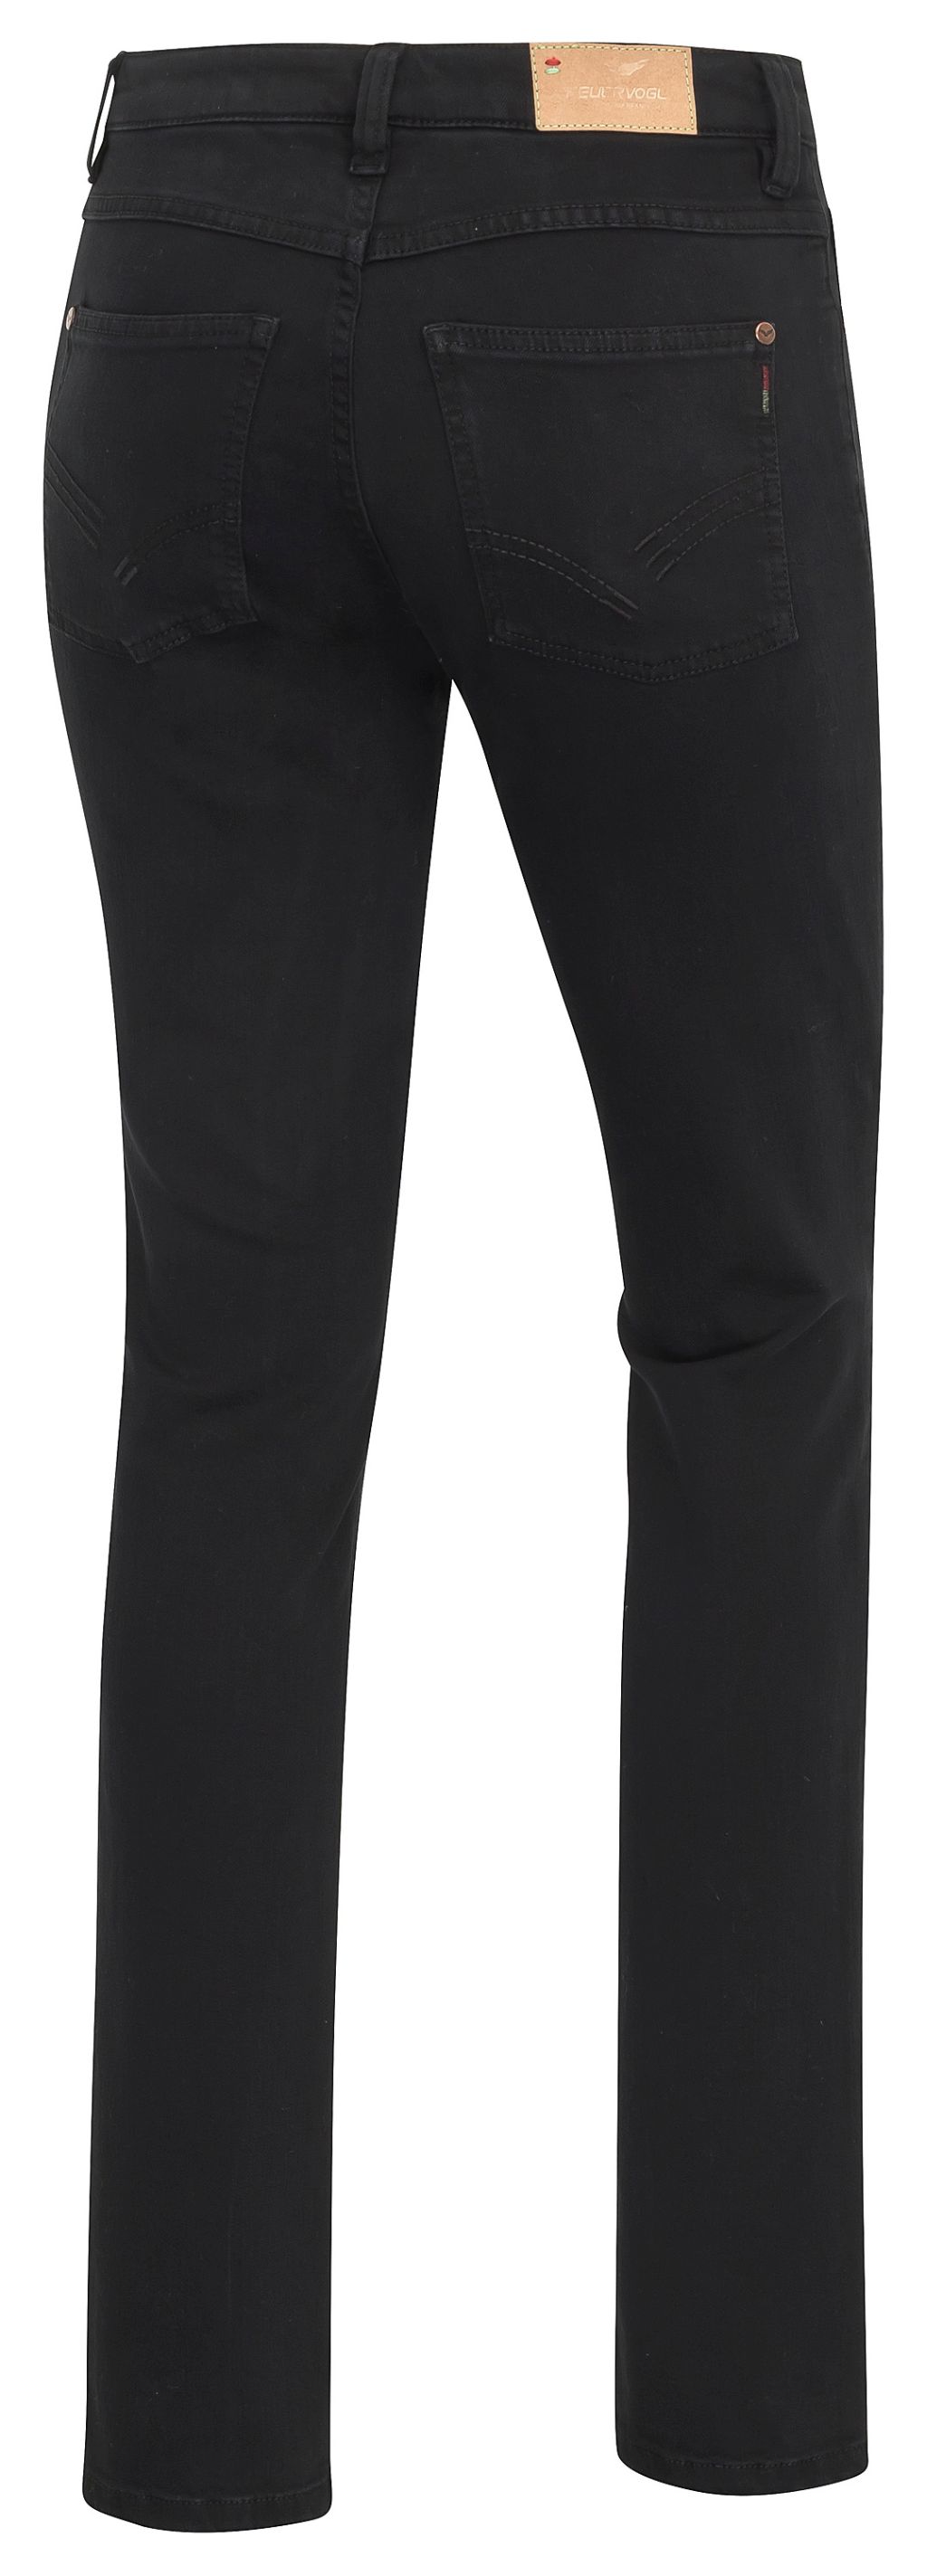 Svenja Black-Black Slim Fit Medium Waist Jeans - Bio-Baumwolle 38